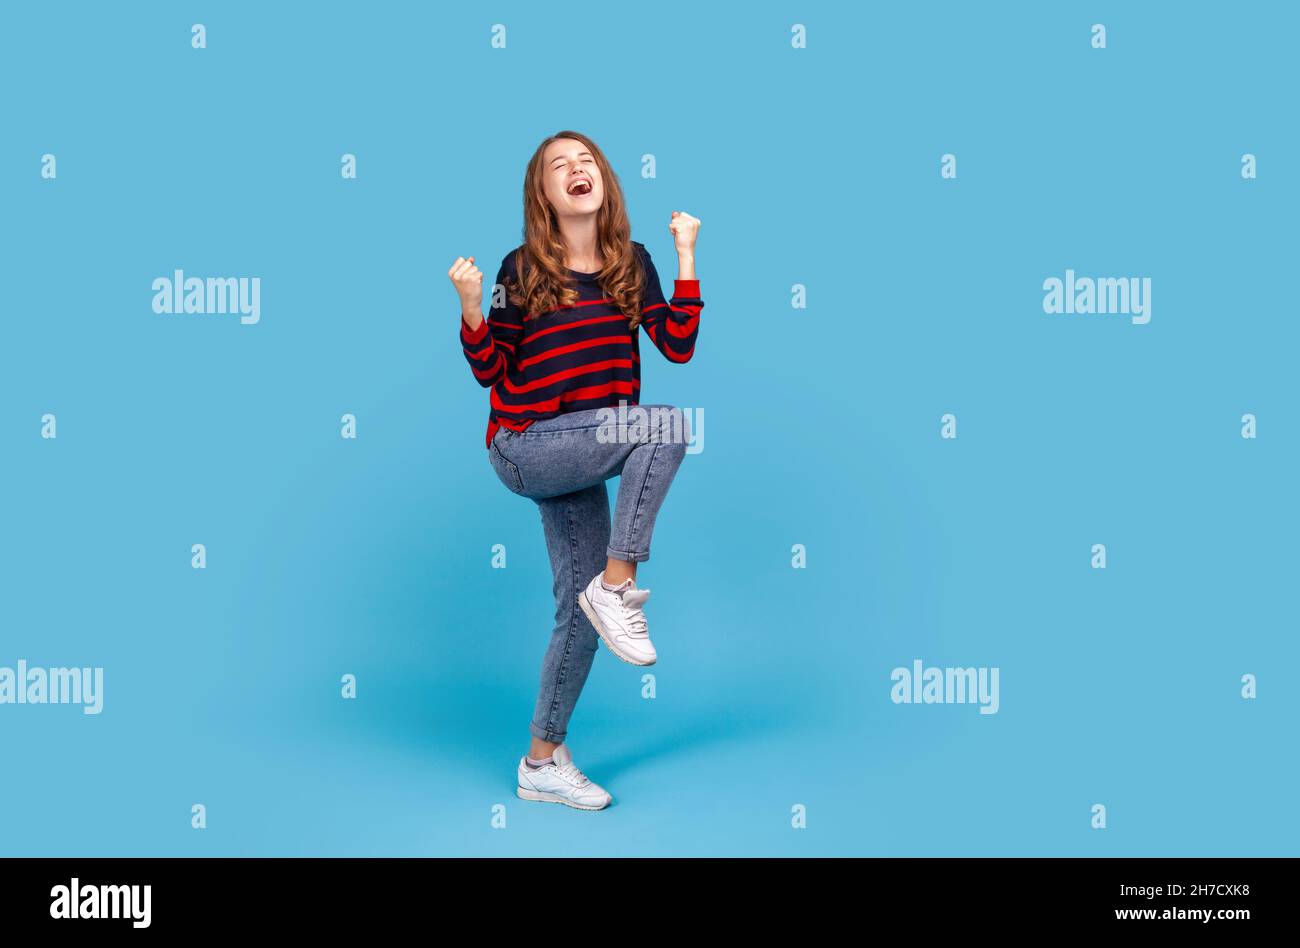 Durchgehende positive zufriedene Frau trägt gestreiften lässigen Pullover und Jeans, erhöhte geballte Fäuste, glücklich über den Sieg, zum Ausdruck bringen Triumph. Innenaufnahme des Studios isoliert auf blauem Hintergrund. Stockfoto